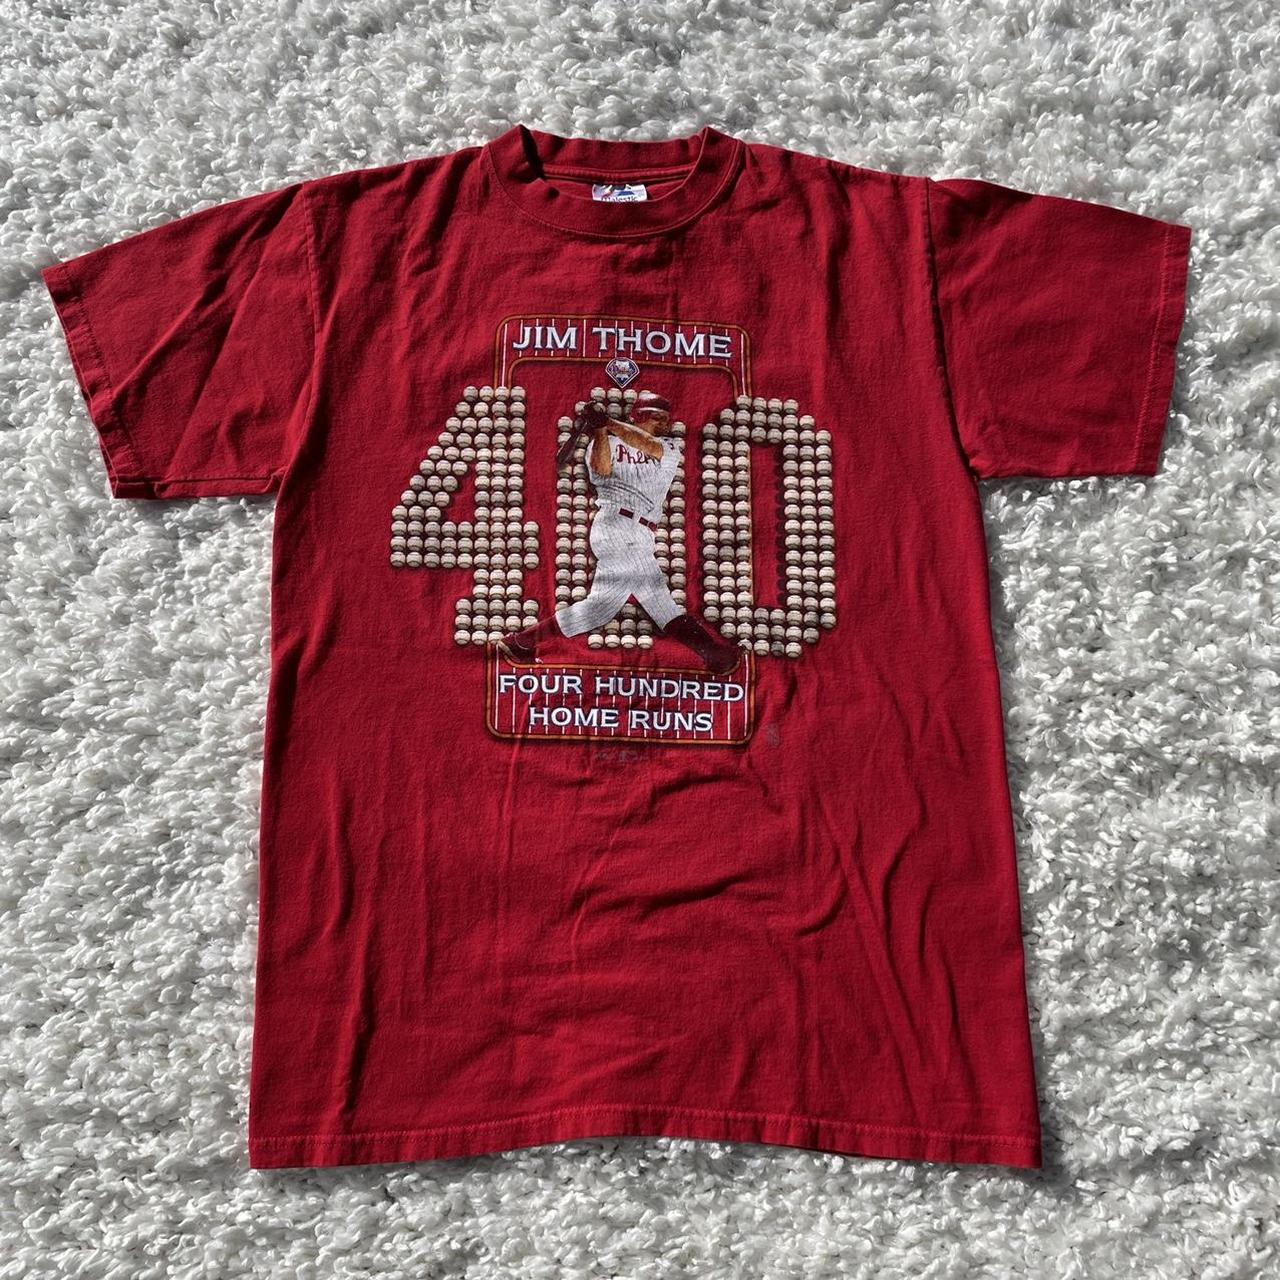 2004 Jim Thome 400 Home Runs t shirt , Size Large I